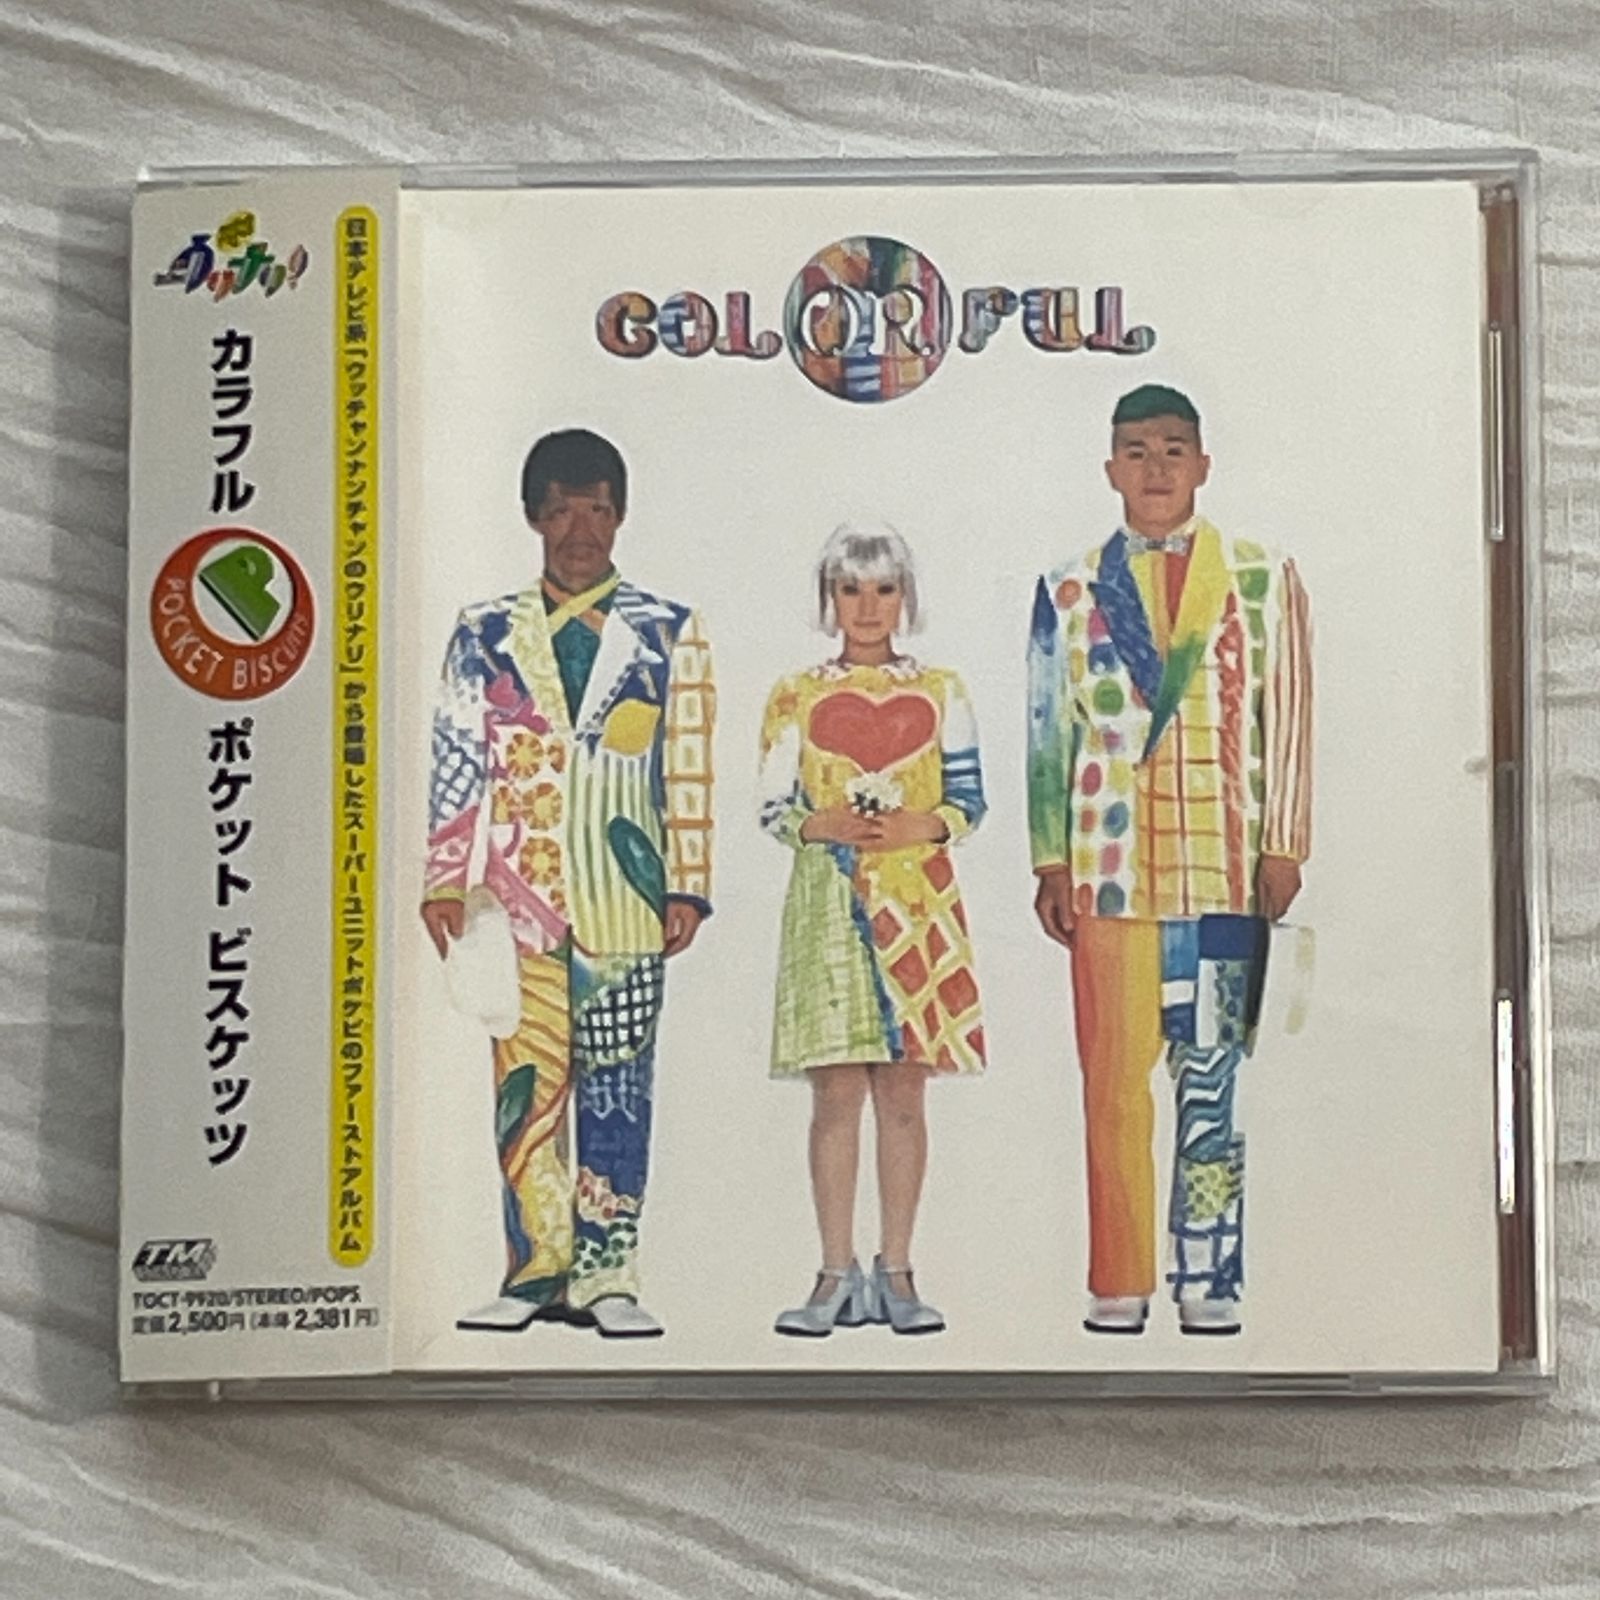 ポケットビスケッツ CD - アート